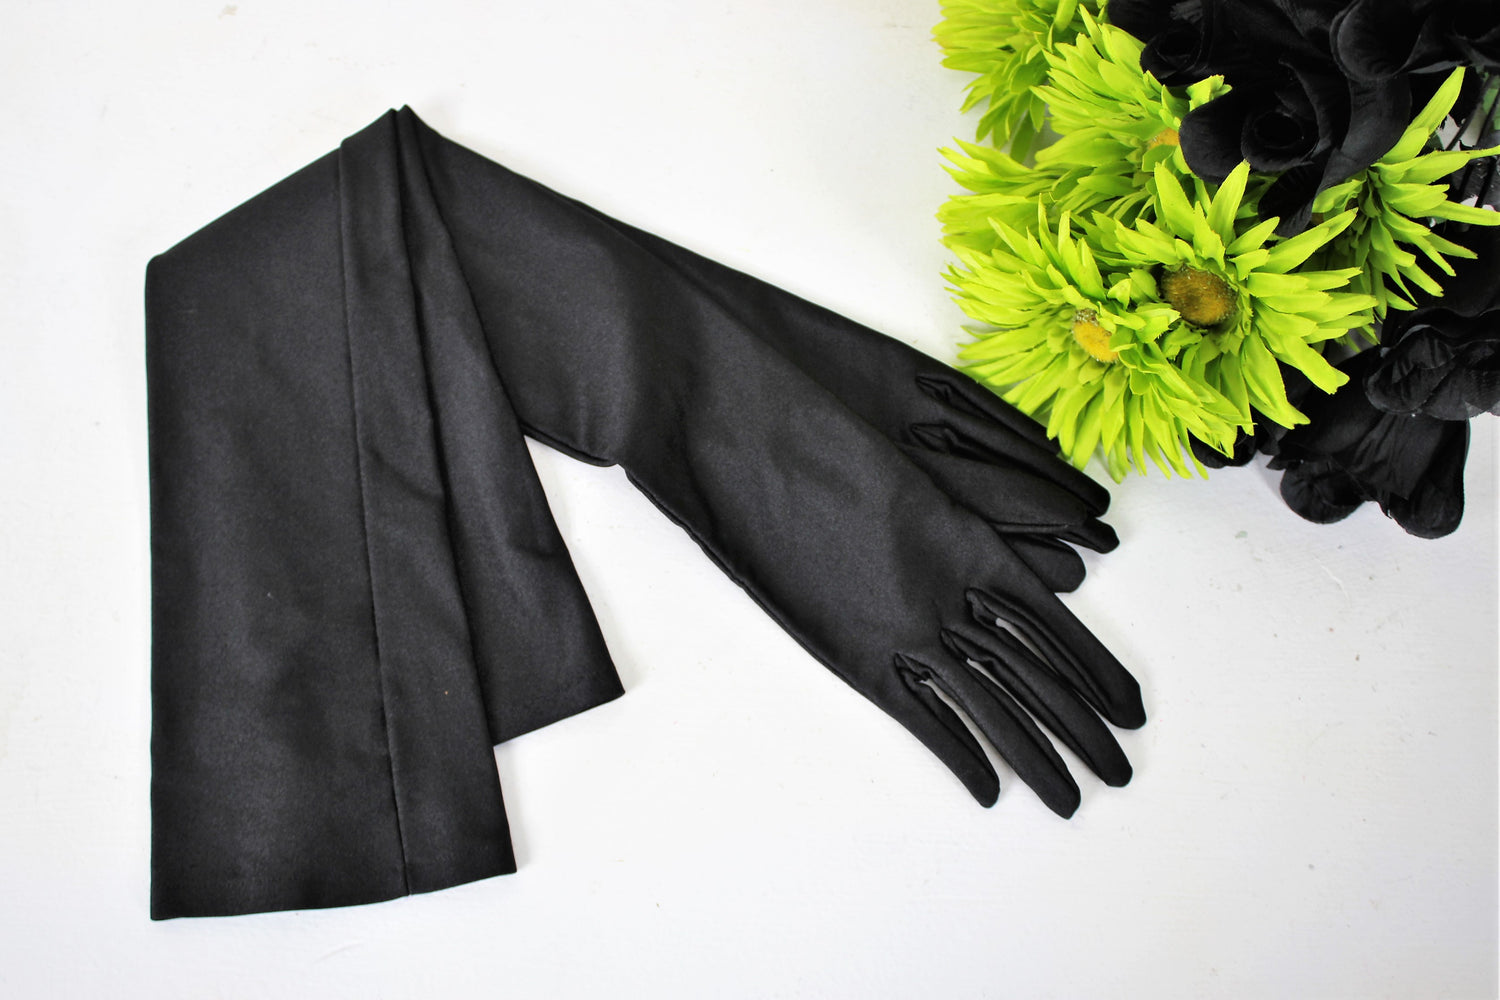 Vintage 1960s Black Satin Gloves by Gant Neyret, Made in France, Size 7